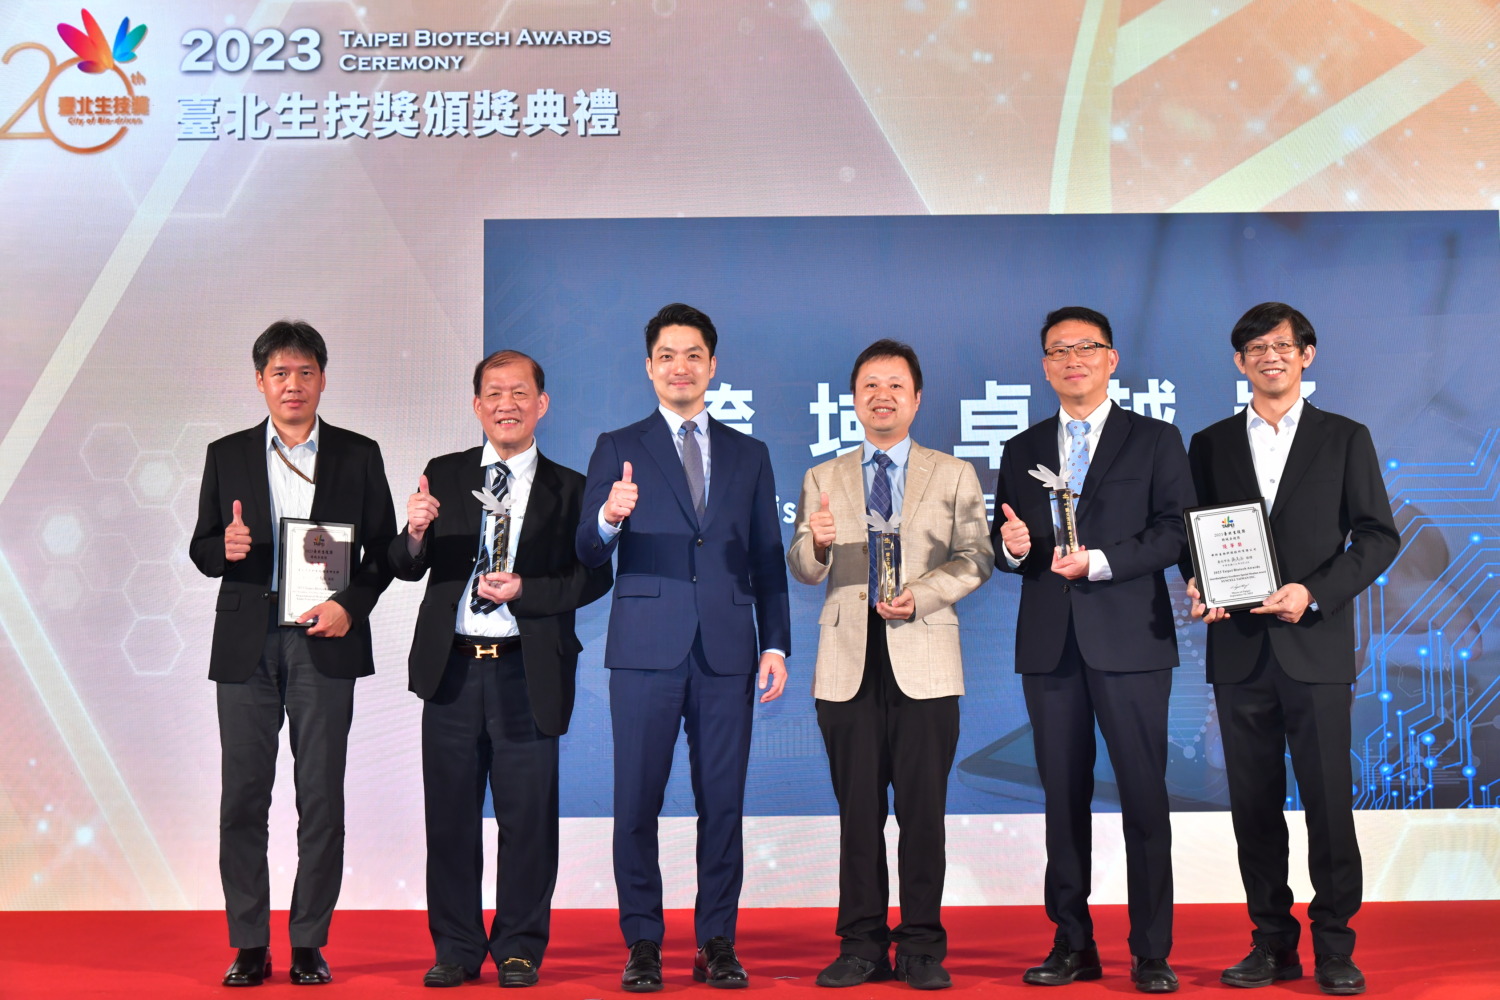 生技產業奧斯卡級榮耀「2023臺北生技獎」四大獎項得獎名單揭曉